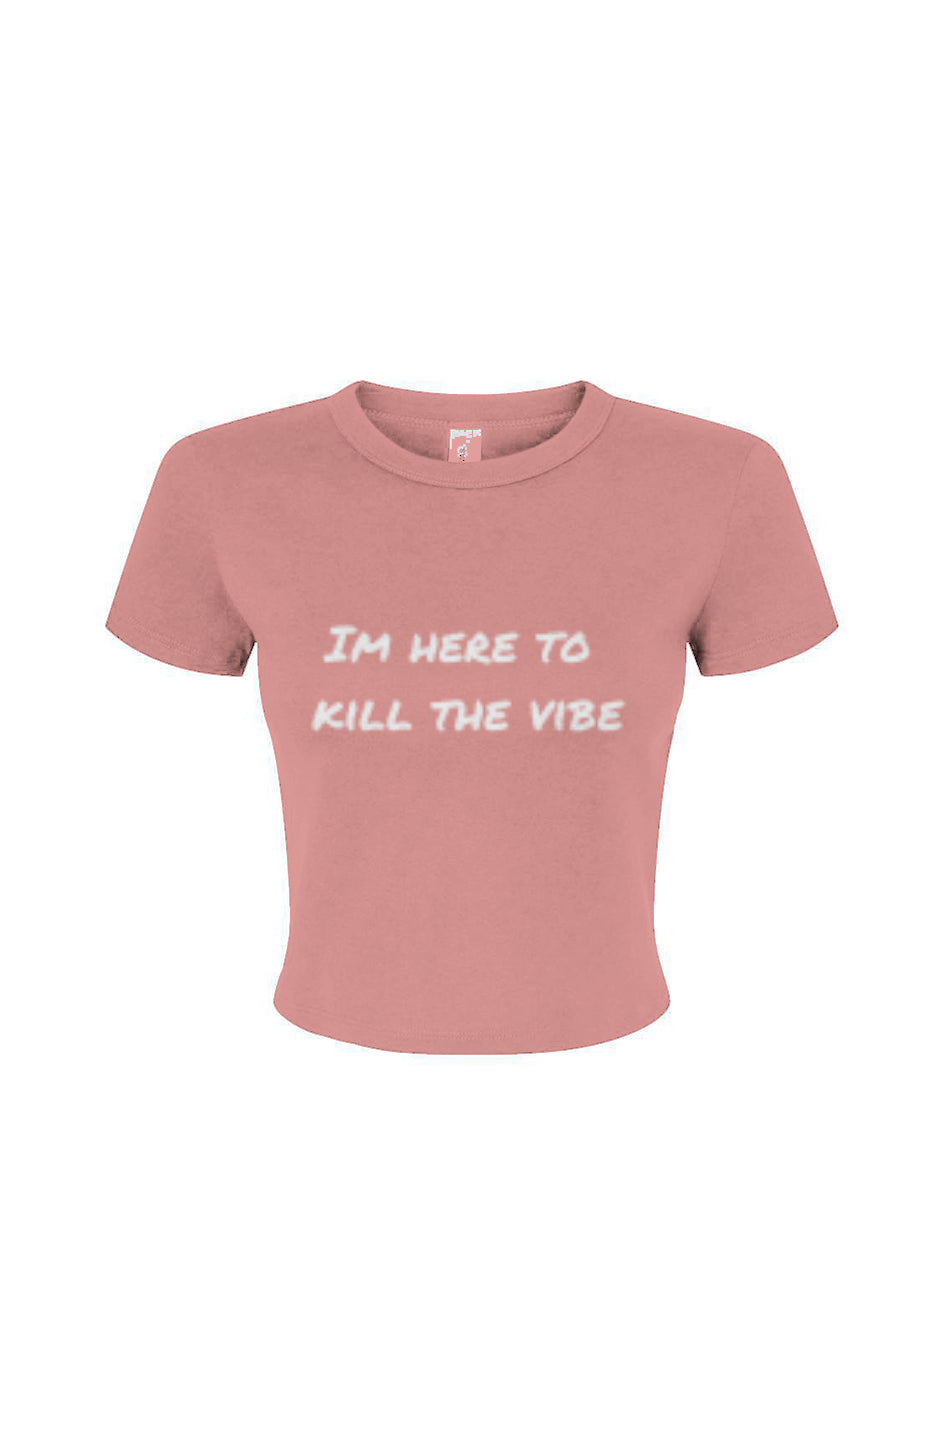 "I'm here to kill the vibe" - Baby tee